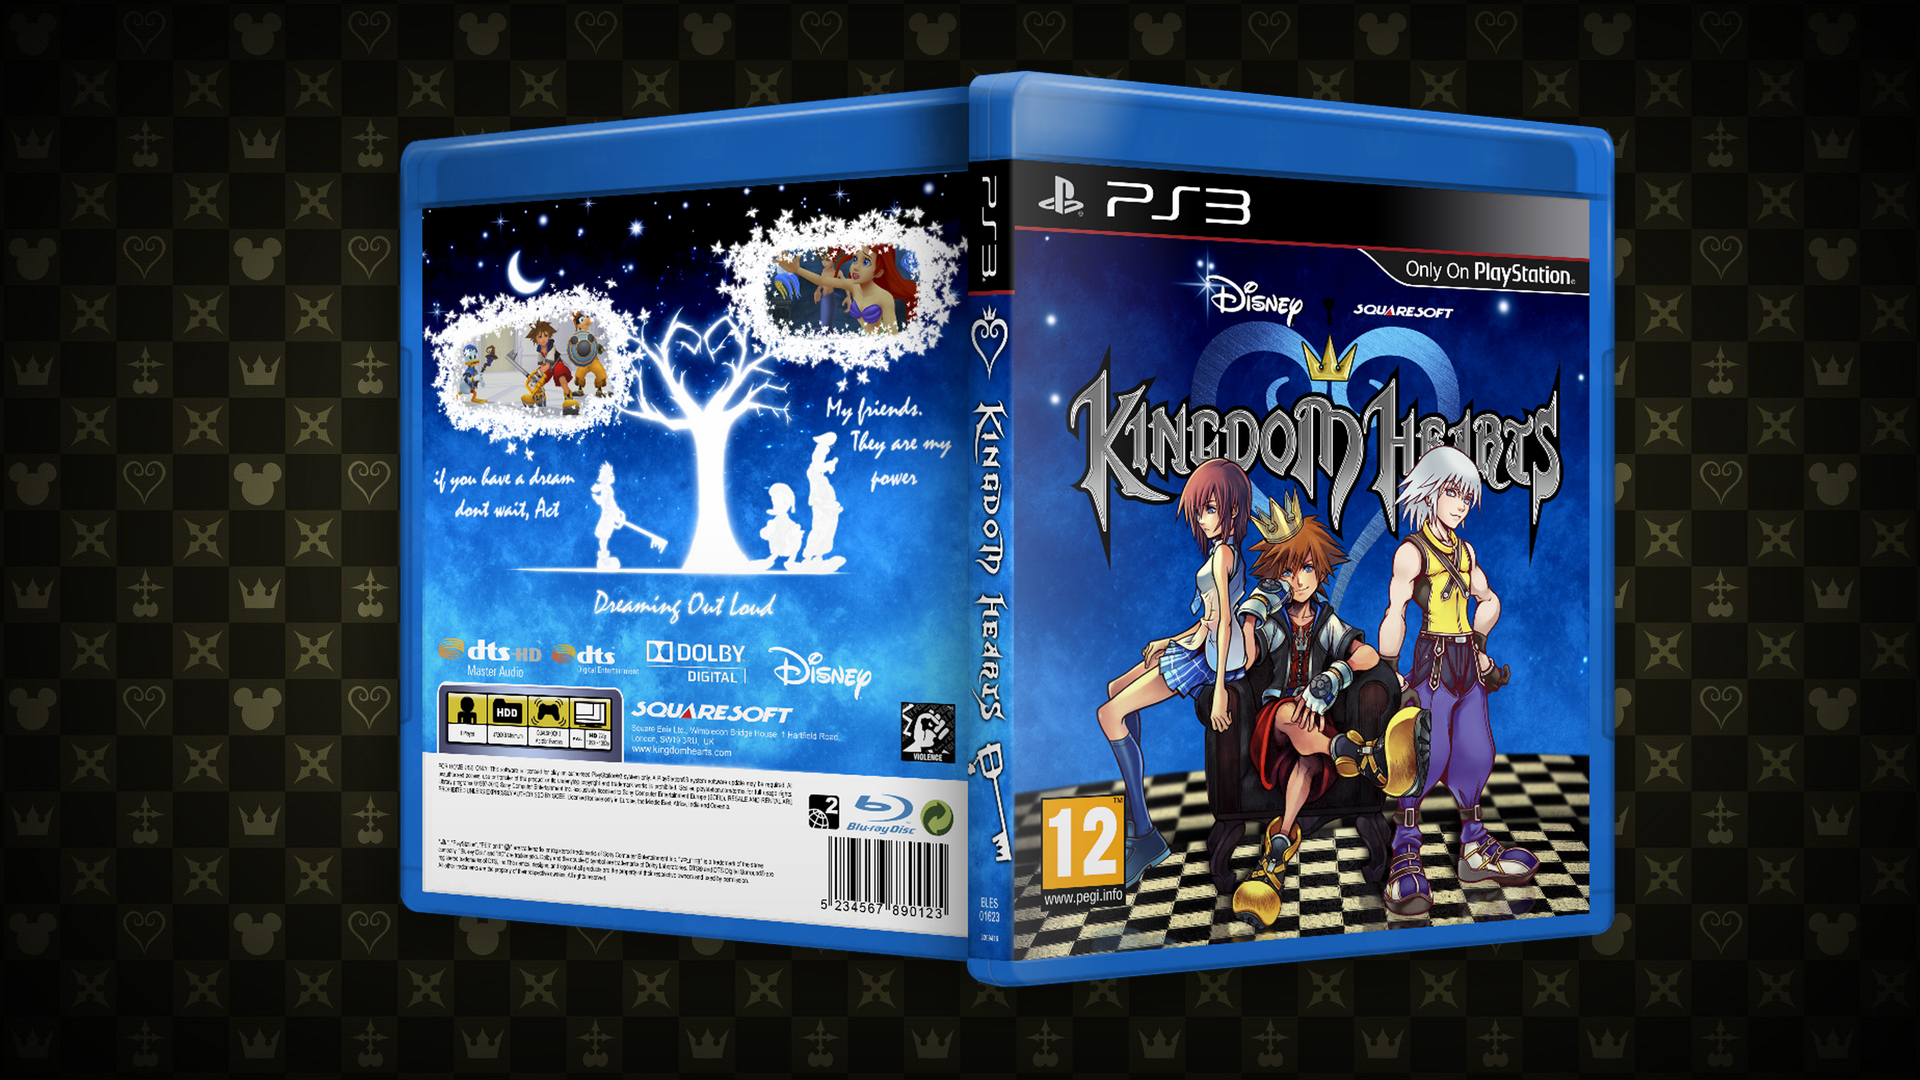 Kingdom Hearts PS3 box cover